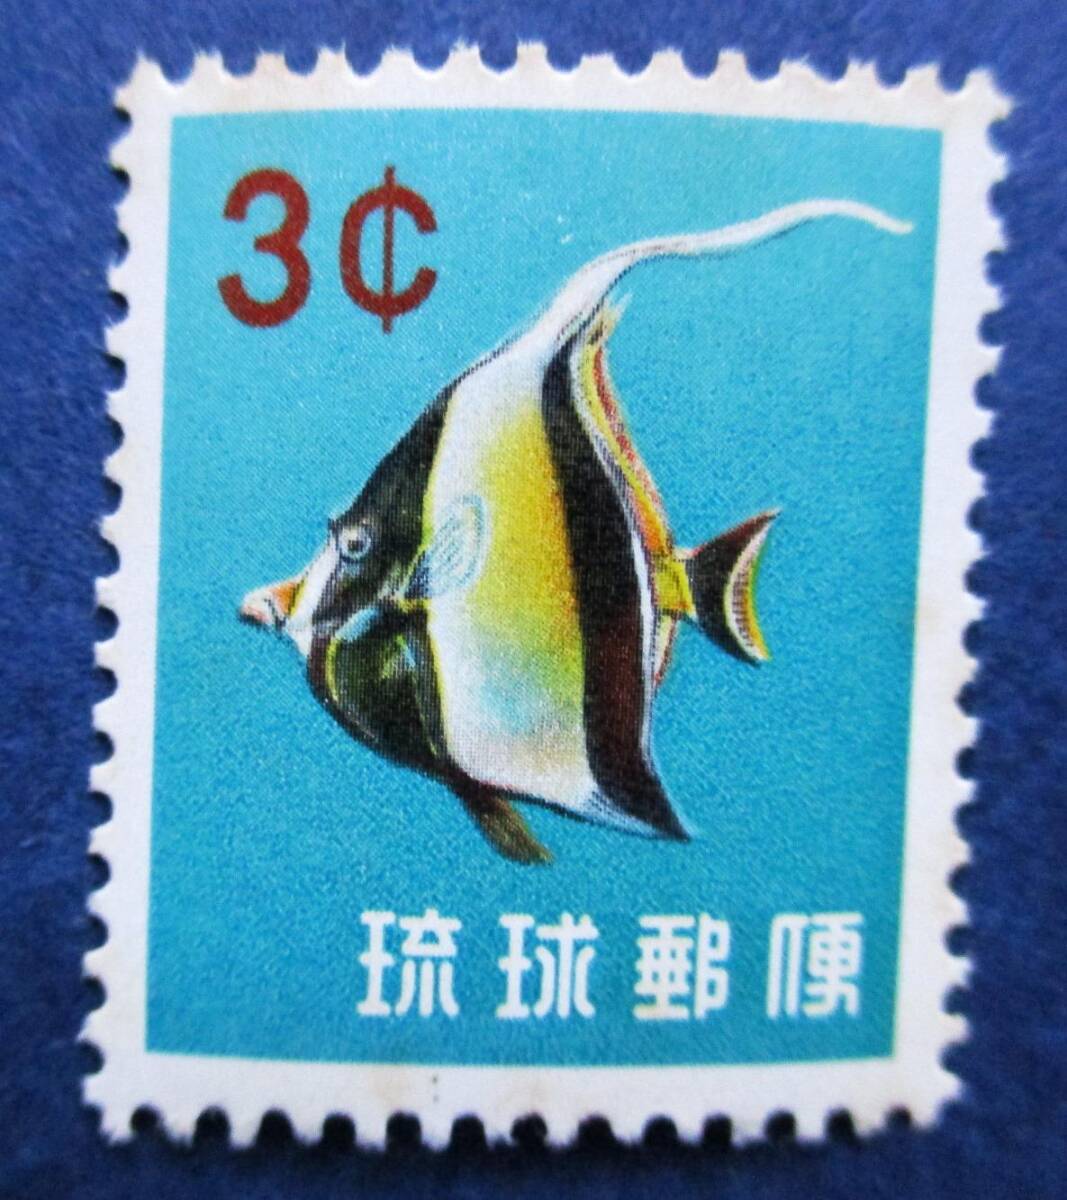 沖縄切手・琉球切手 第1次動植物シリーズ ツノダシ 3￠切手。 BB17 ほぼ美品ですが、肉眼で微かに見えるシミがあります。画像参照の画像5